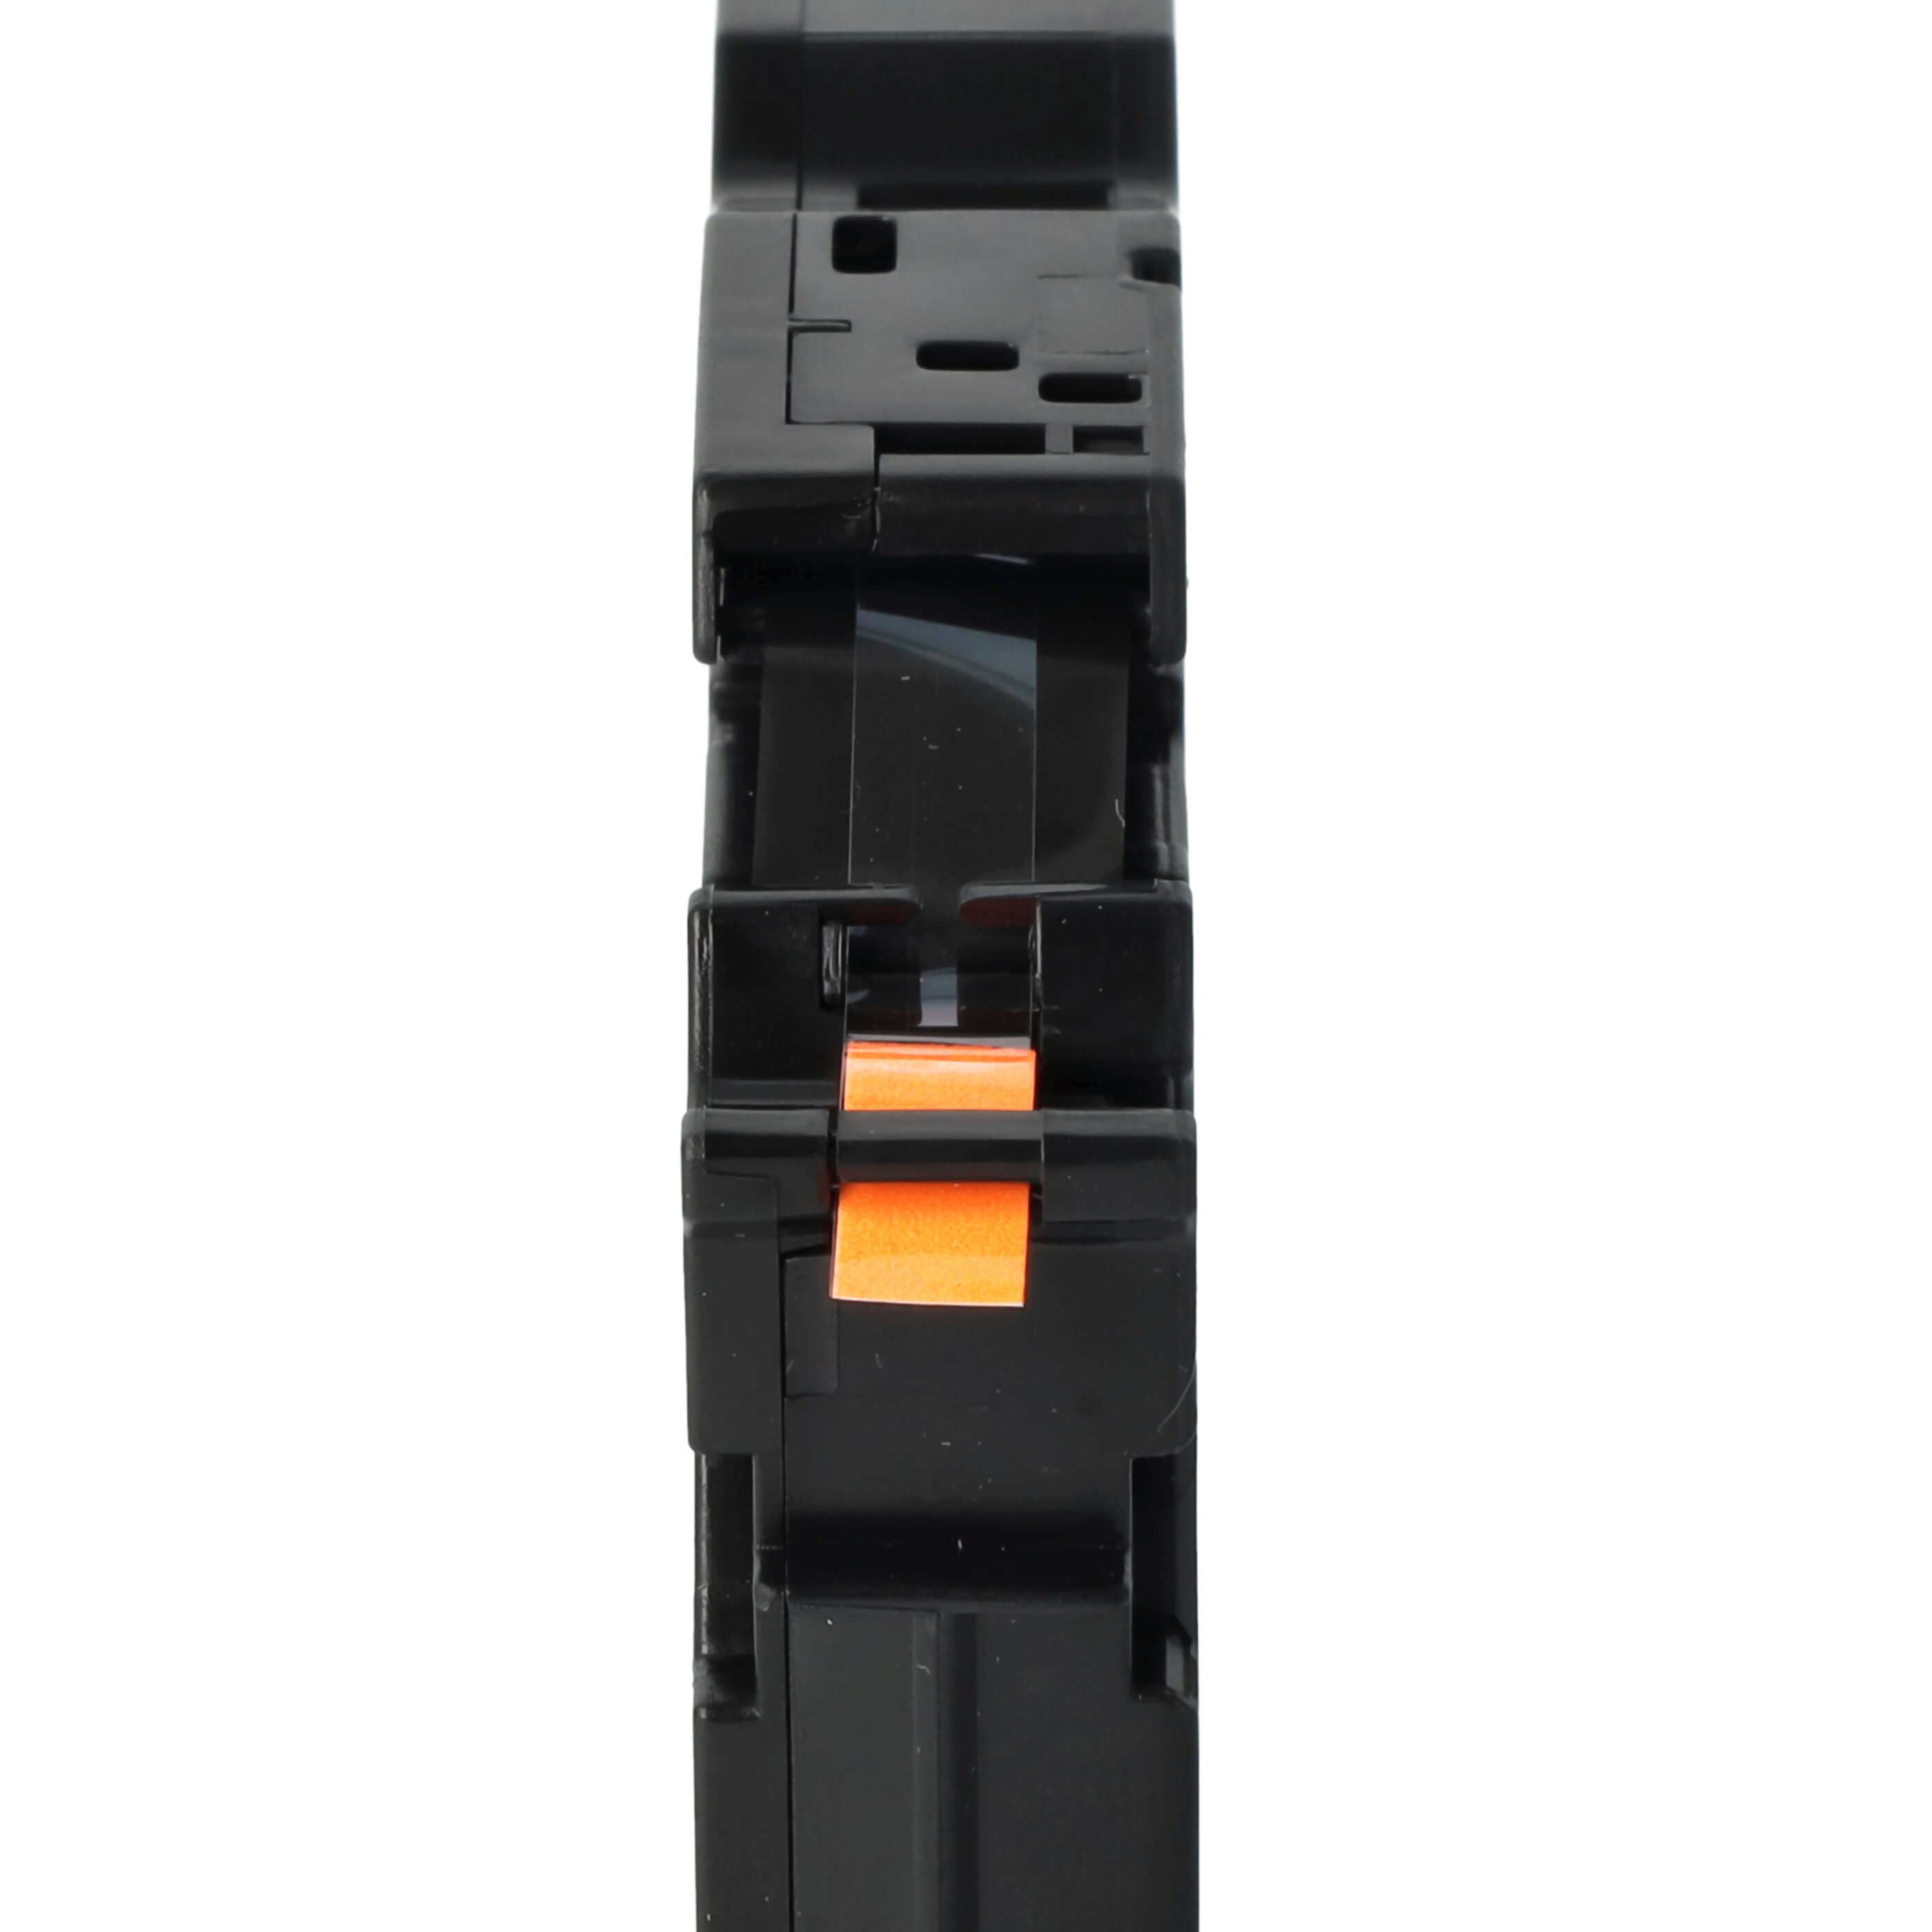 Cassetta nastro sostituisce Brother TZE-B11 per etichettatrice Brother 6mm nero su arancione fluo